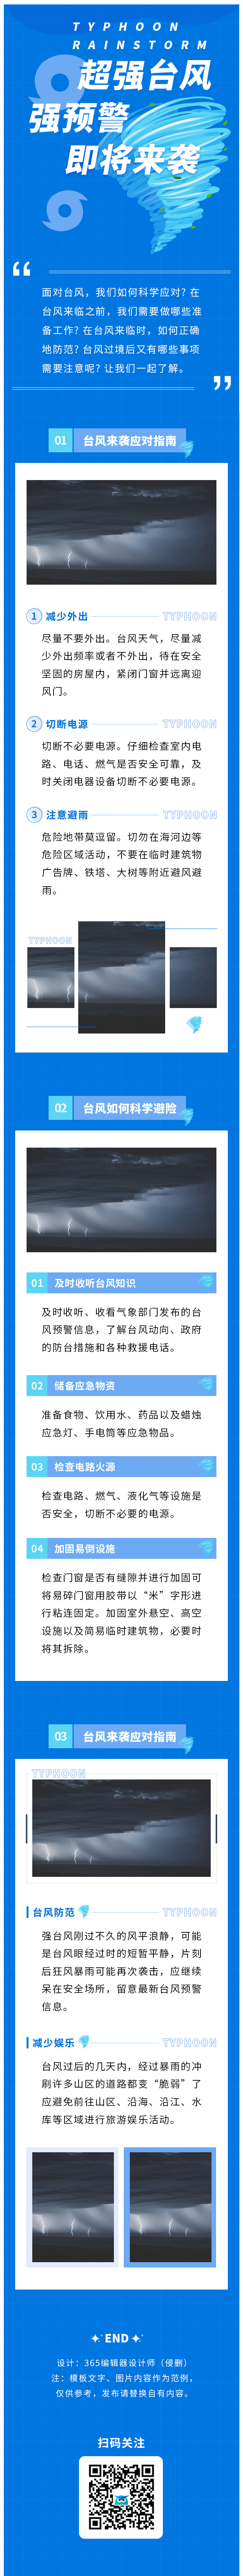 台风预警天气预报自然灾害暴雨防灾救灾防洪